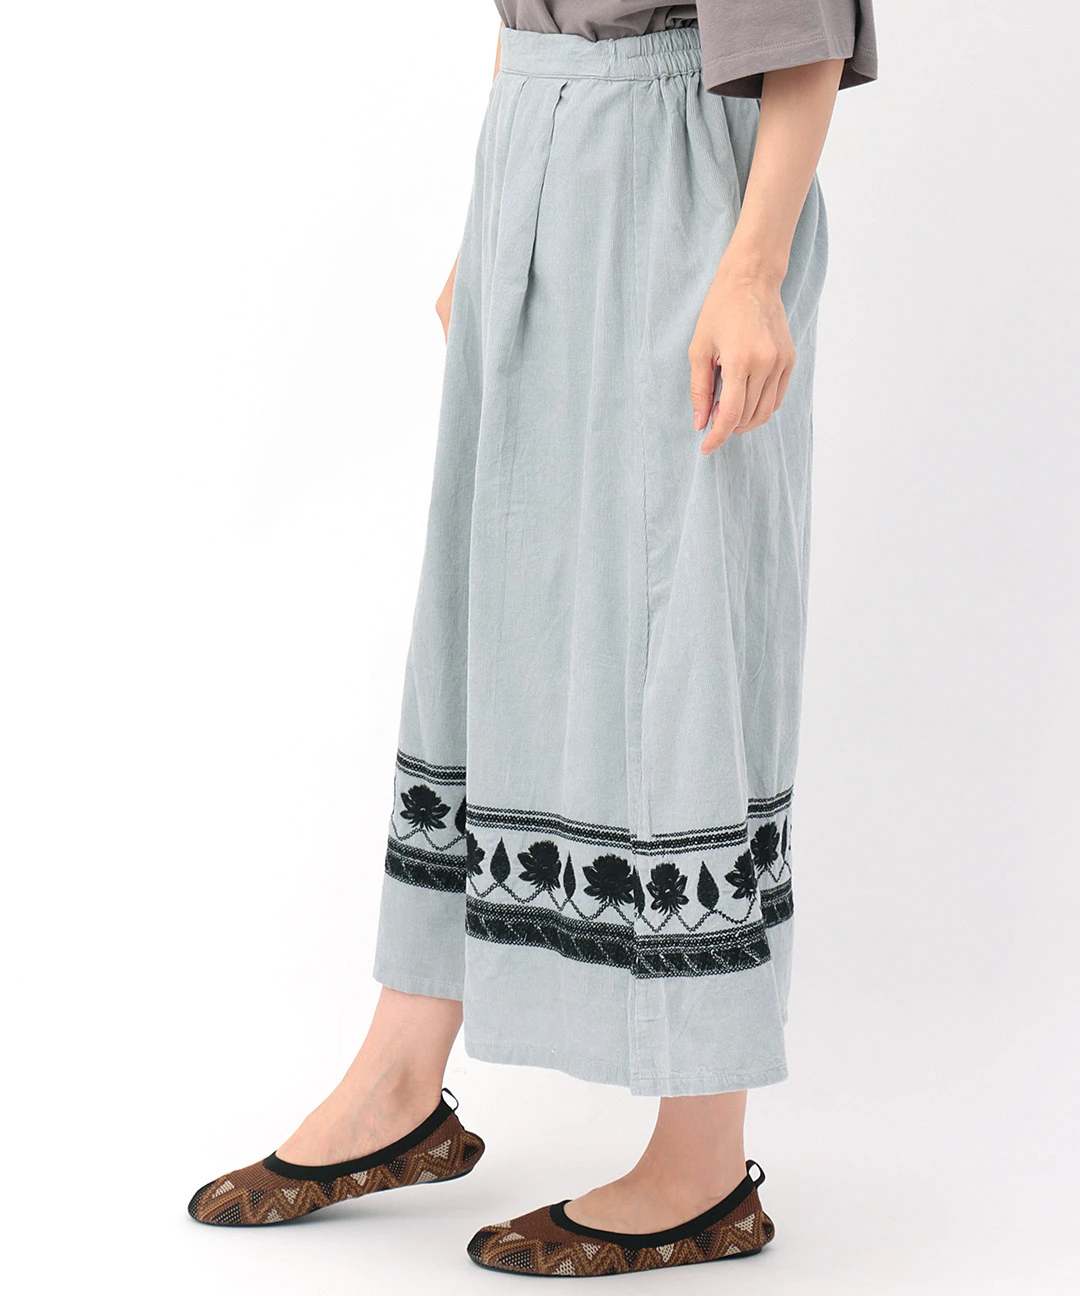 Shanti Shanti コーデュロイ スカート【WEB限定】 / スカート